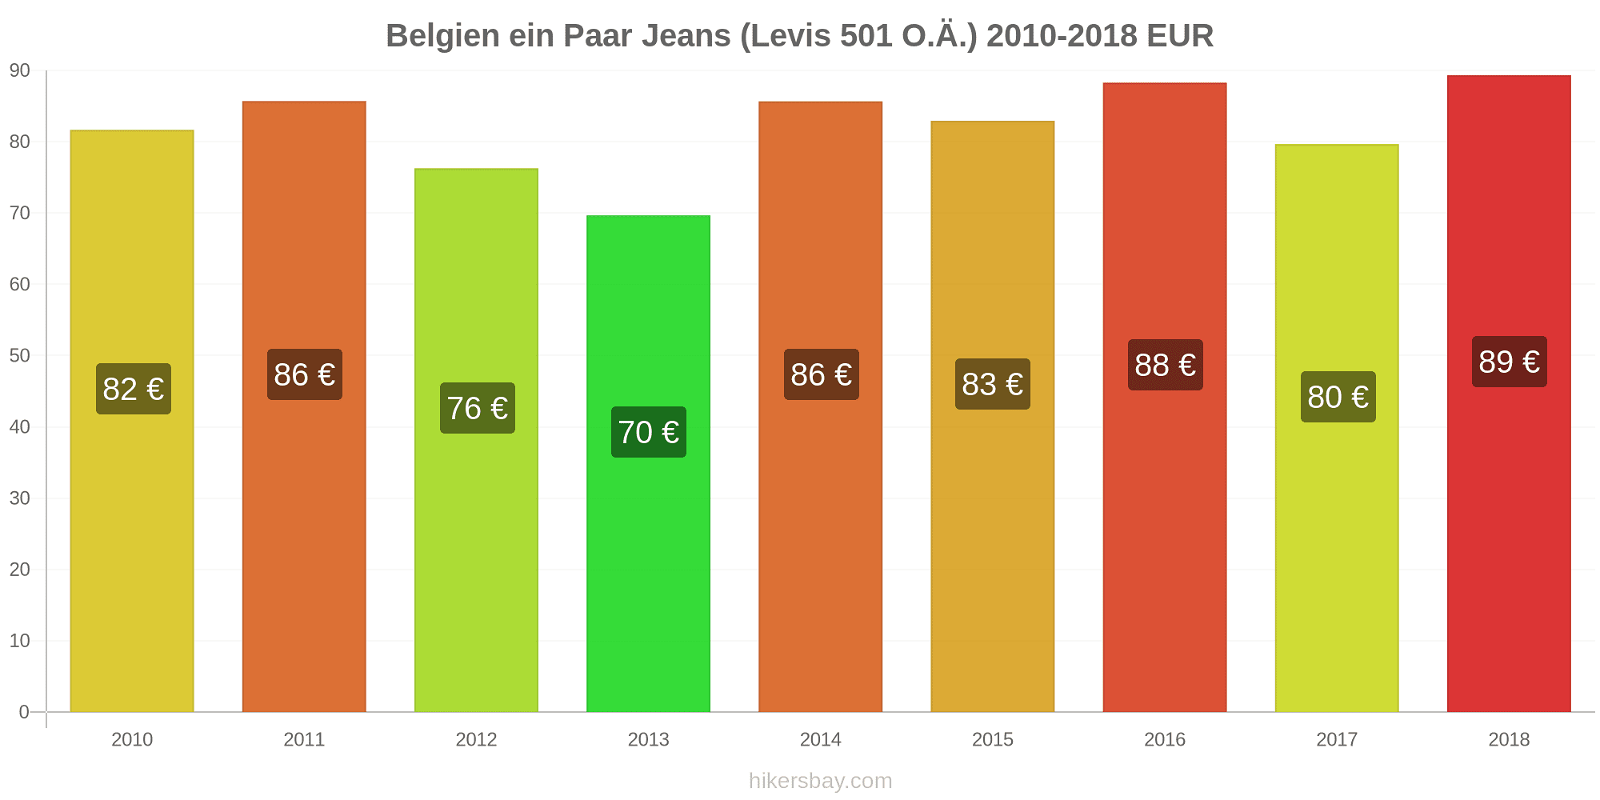 Belgien Preisänderungen 1 Paar Jeans (Levis 501 oder ähnlich) hikersbay.com